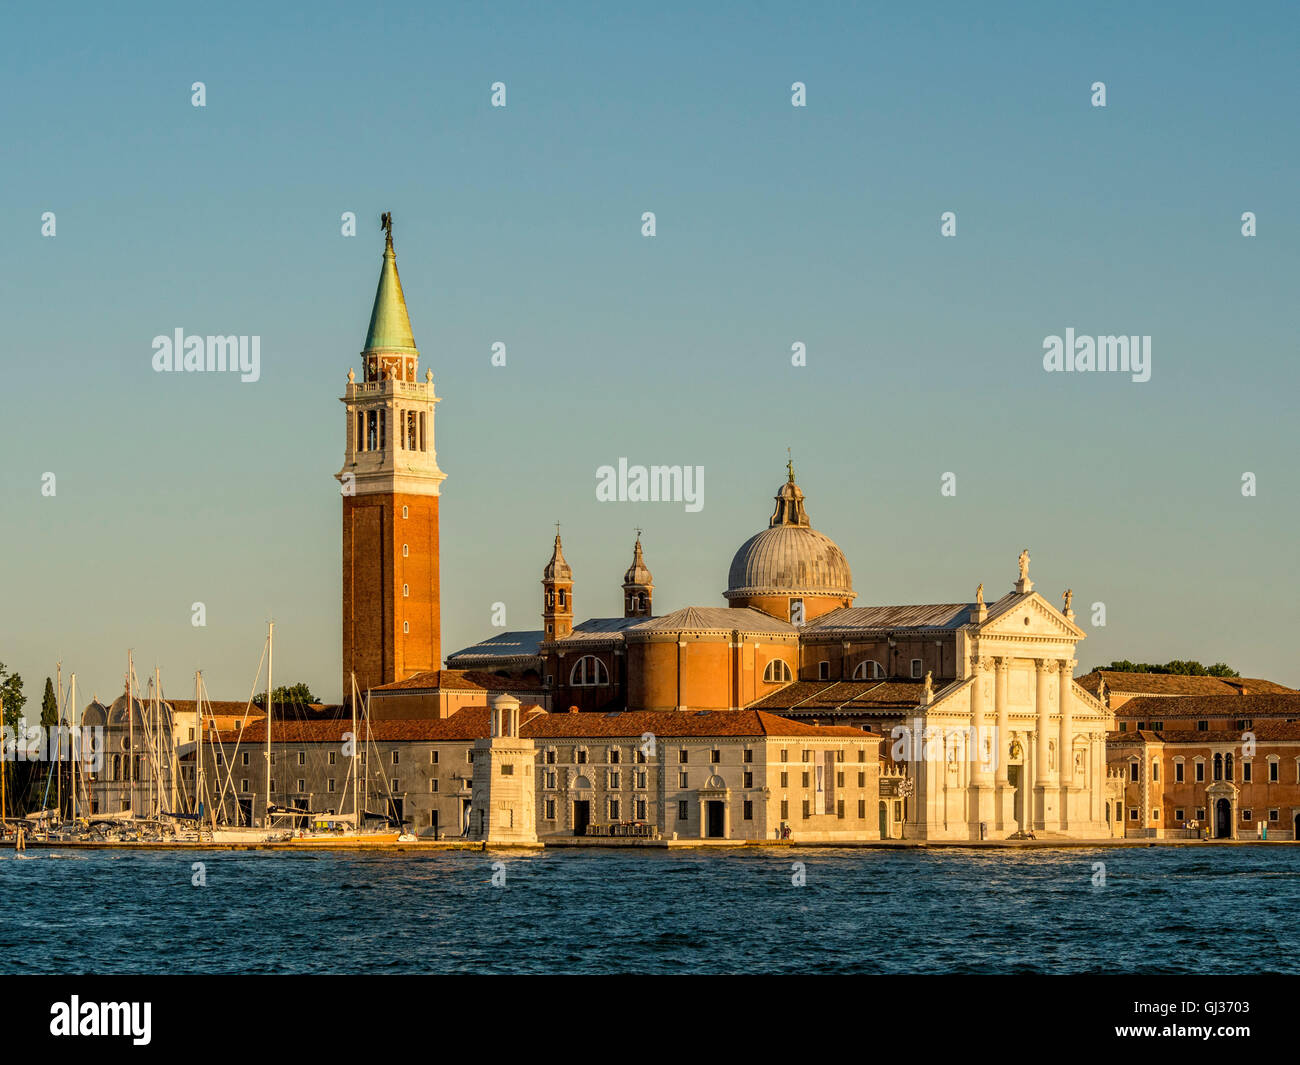 Bianco Marmo istriana la facciata della chiesa di San Giorgio Maggiore, lo stesso nome dell'isola, Venezia, Italia. Foto Stock